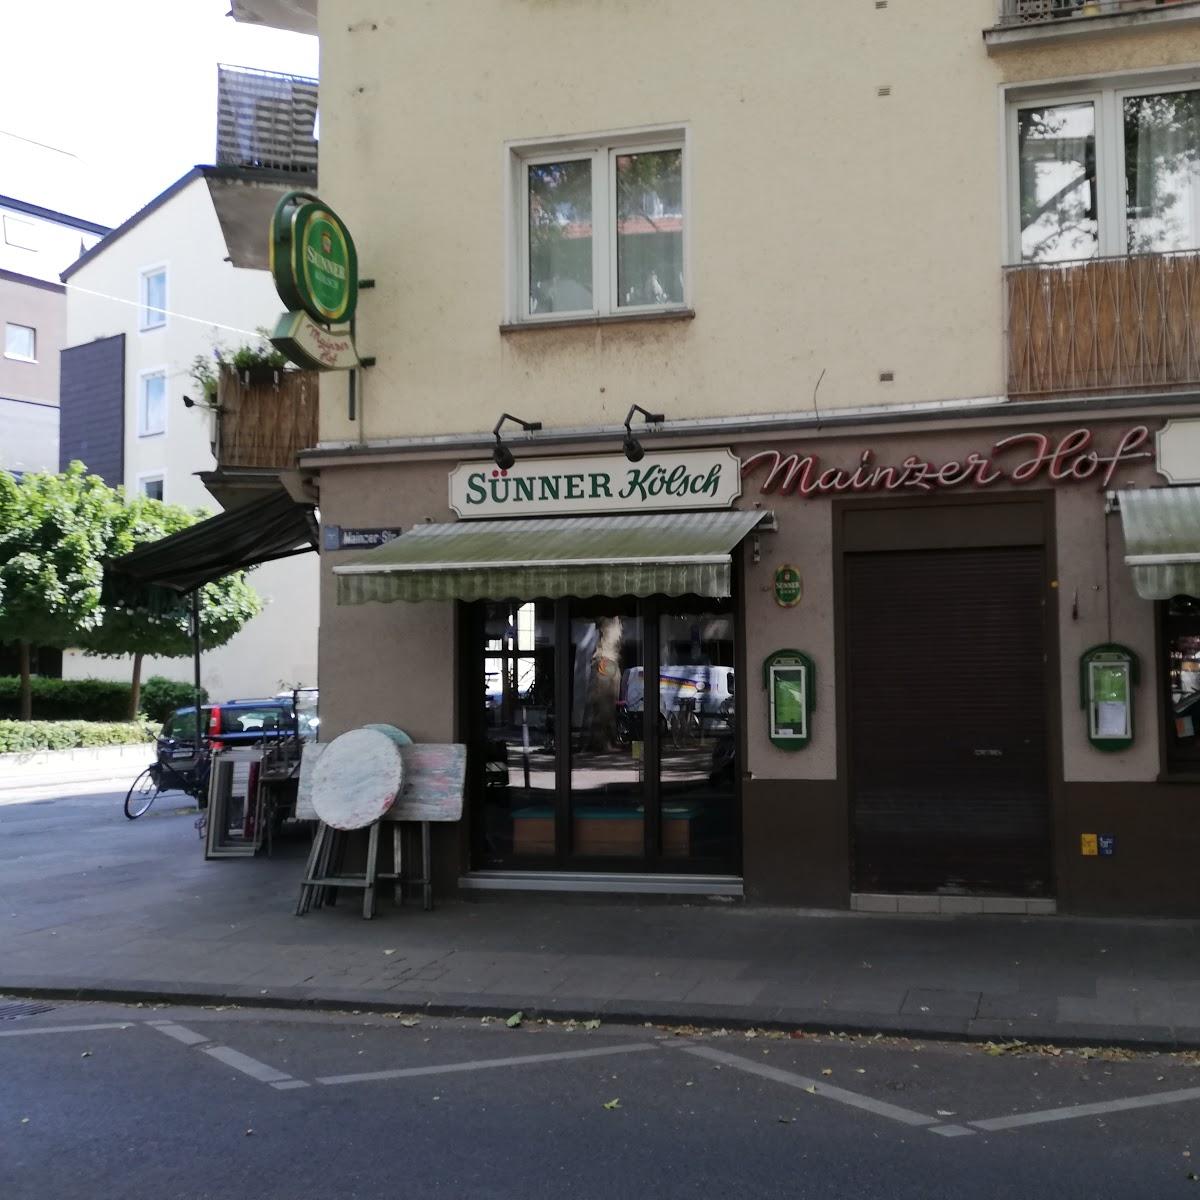 Restaurant "Mainzer Hof" in Köln